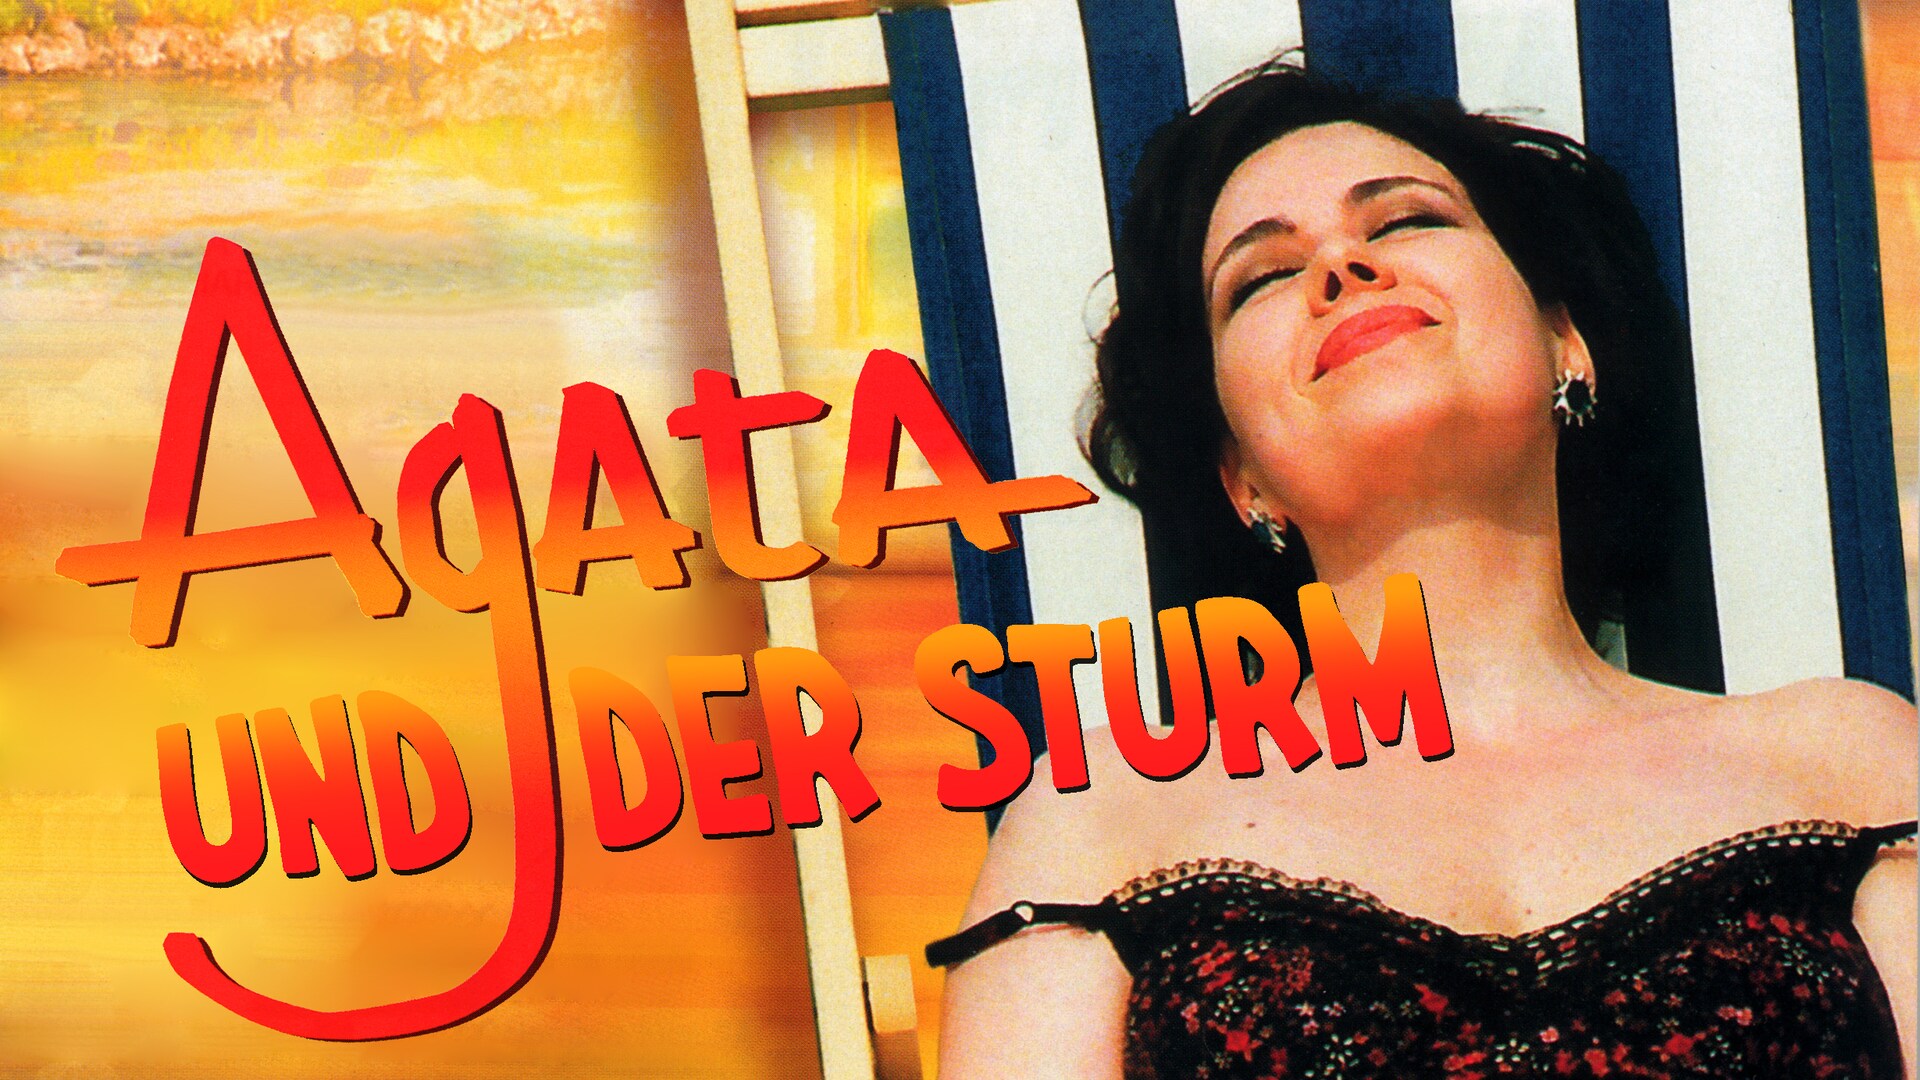 Agata und der Sturm